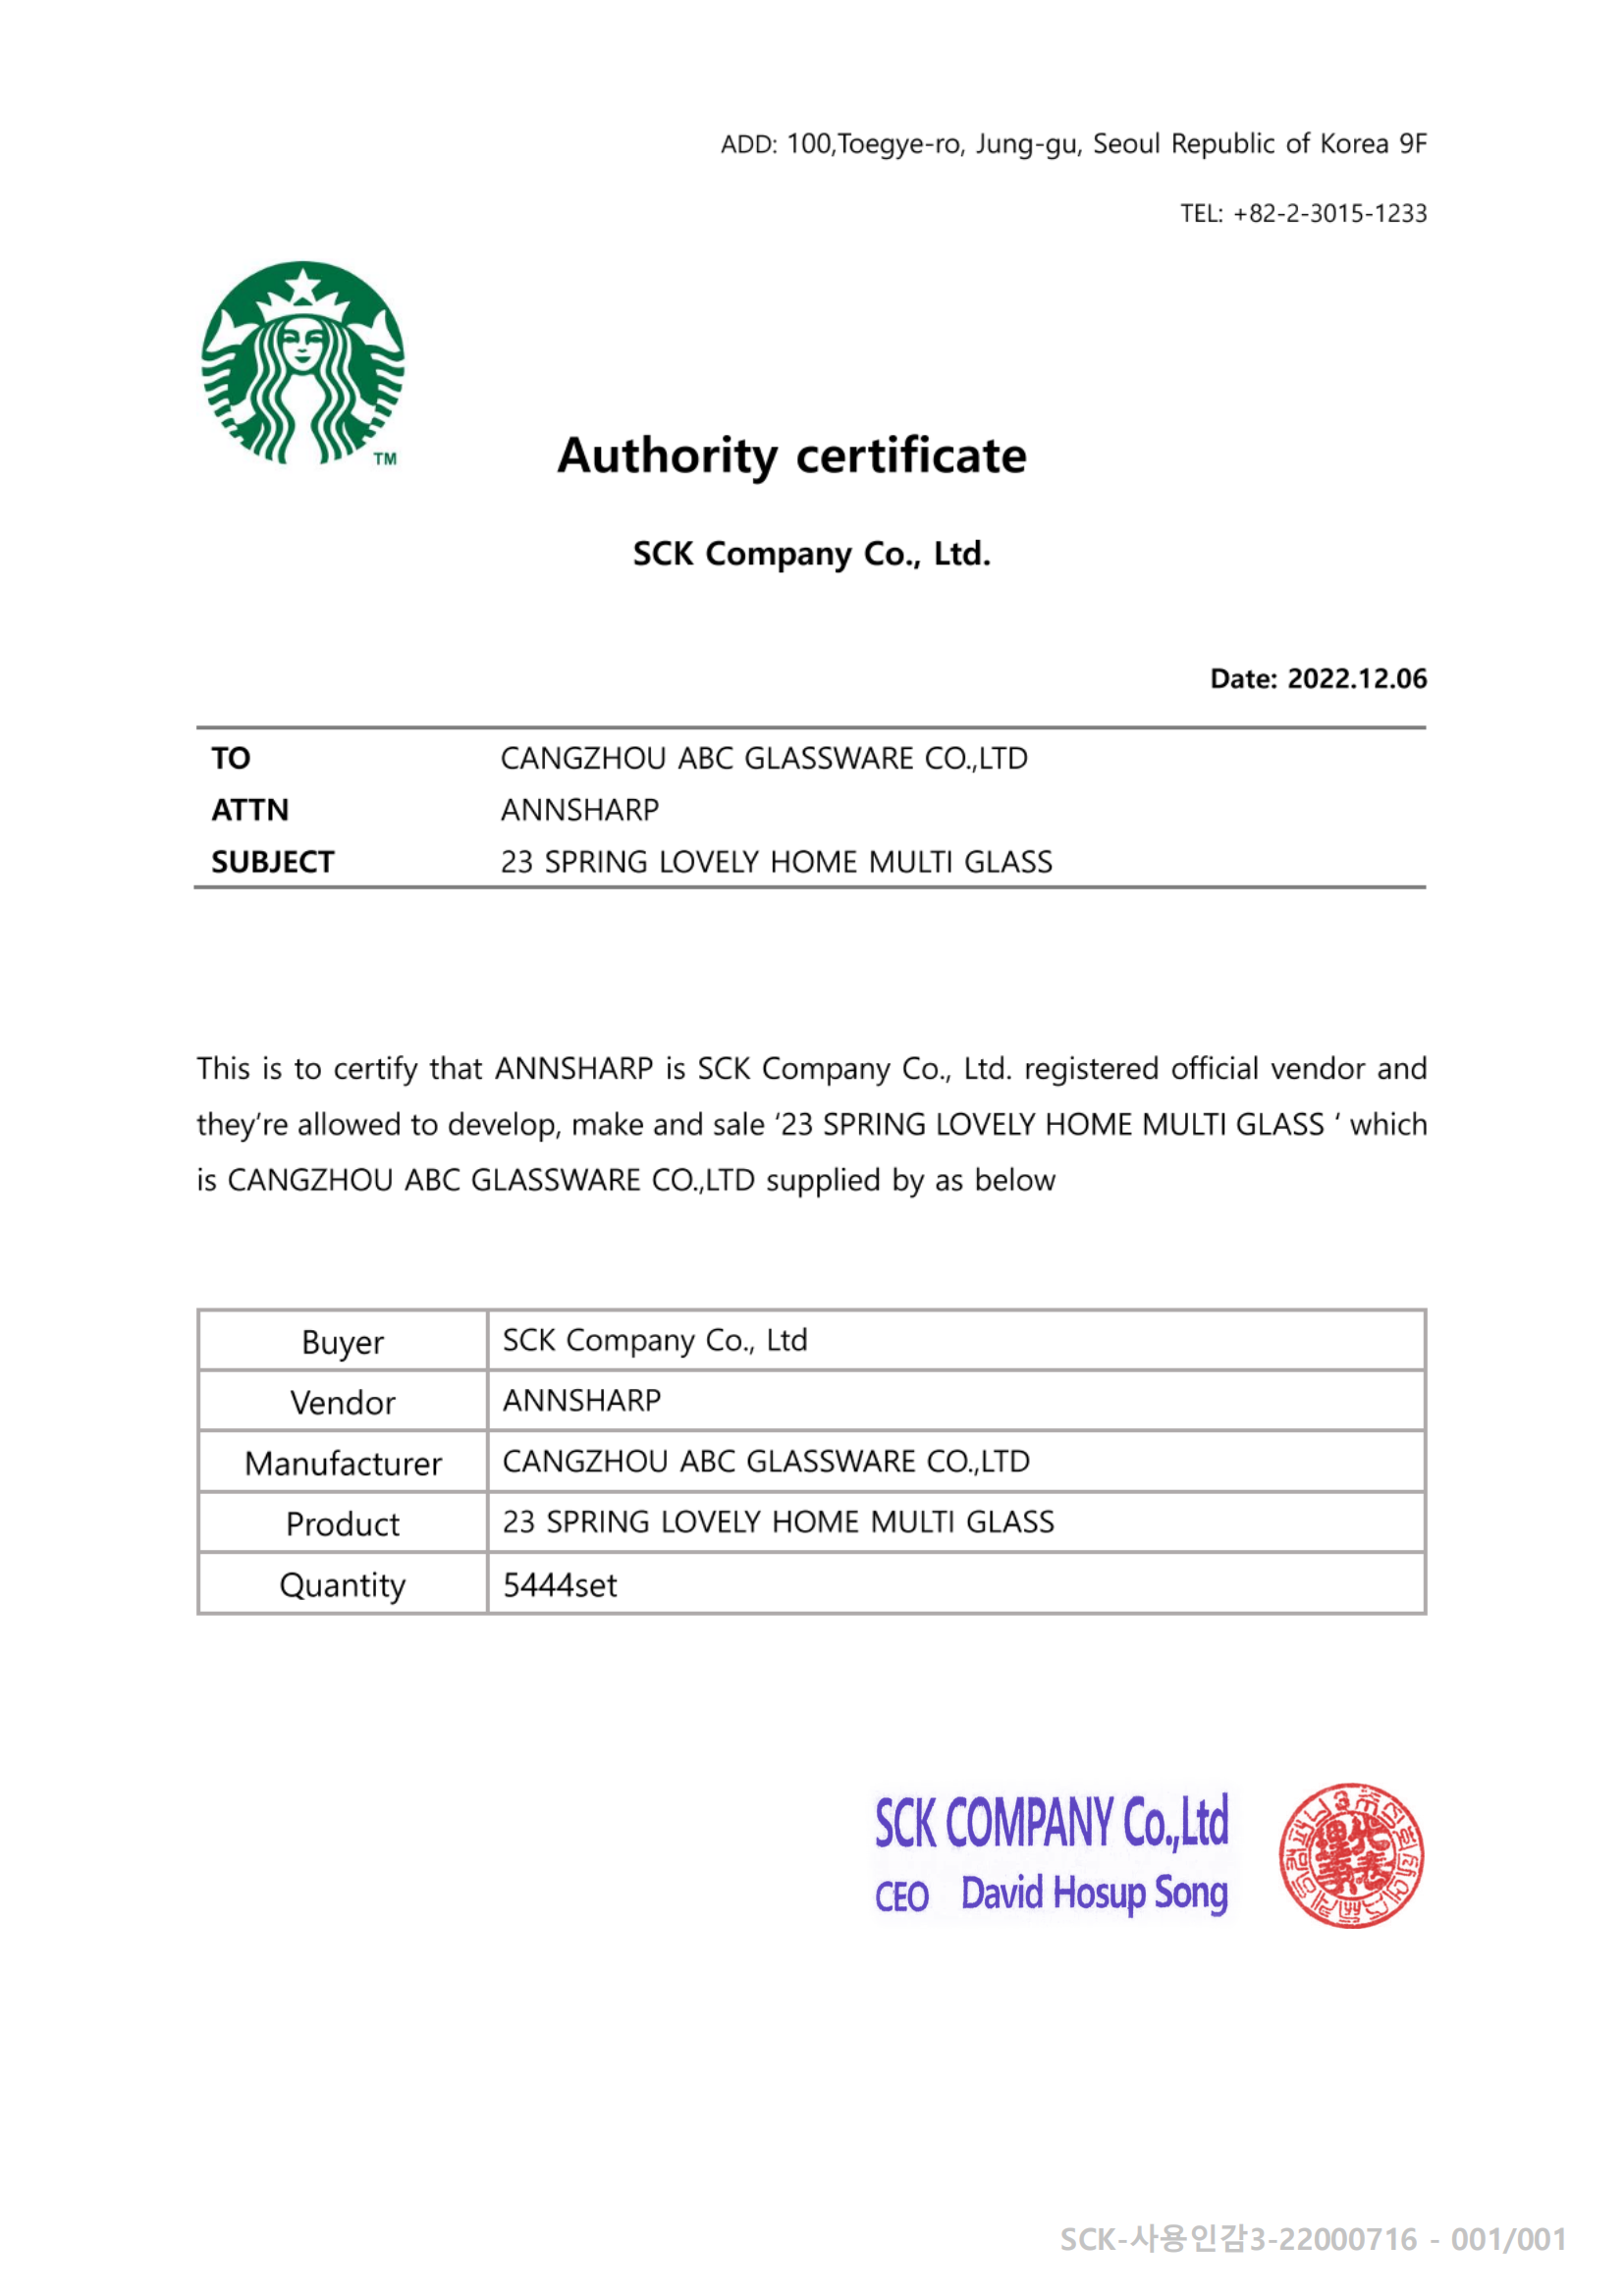 jt glass Starbucks Authorization